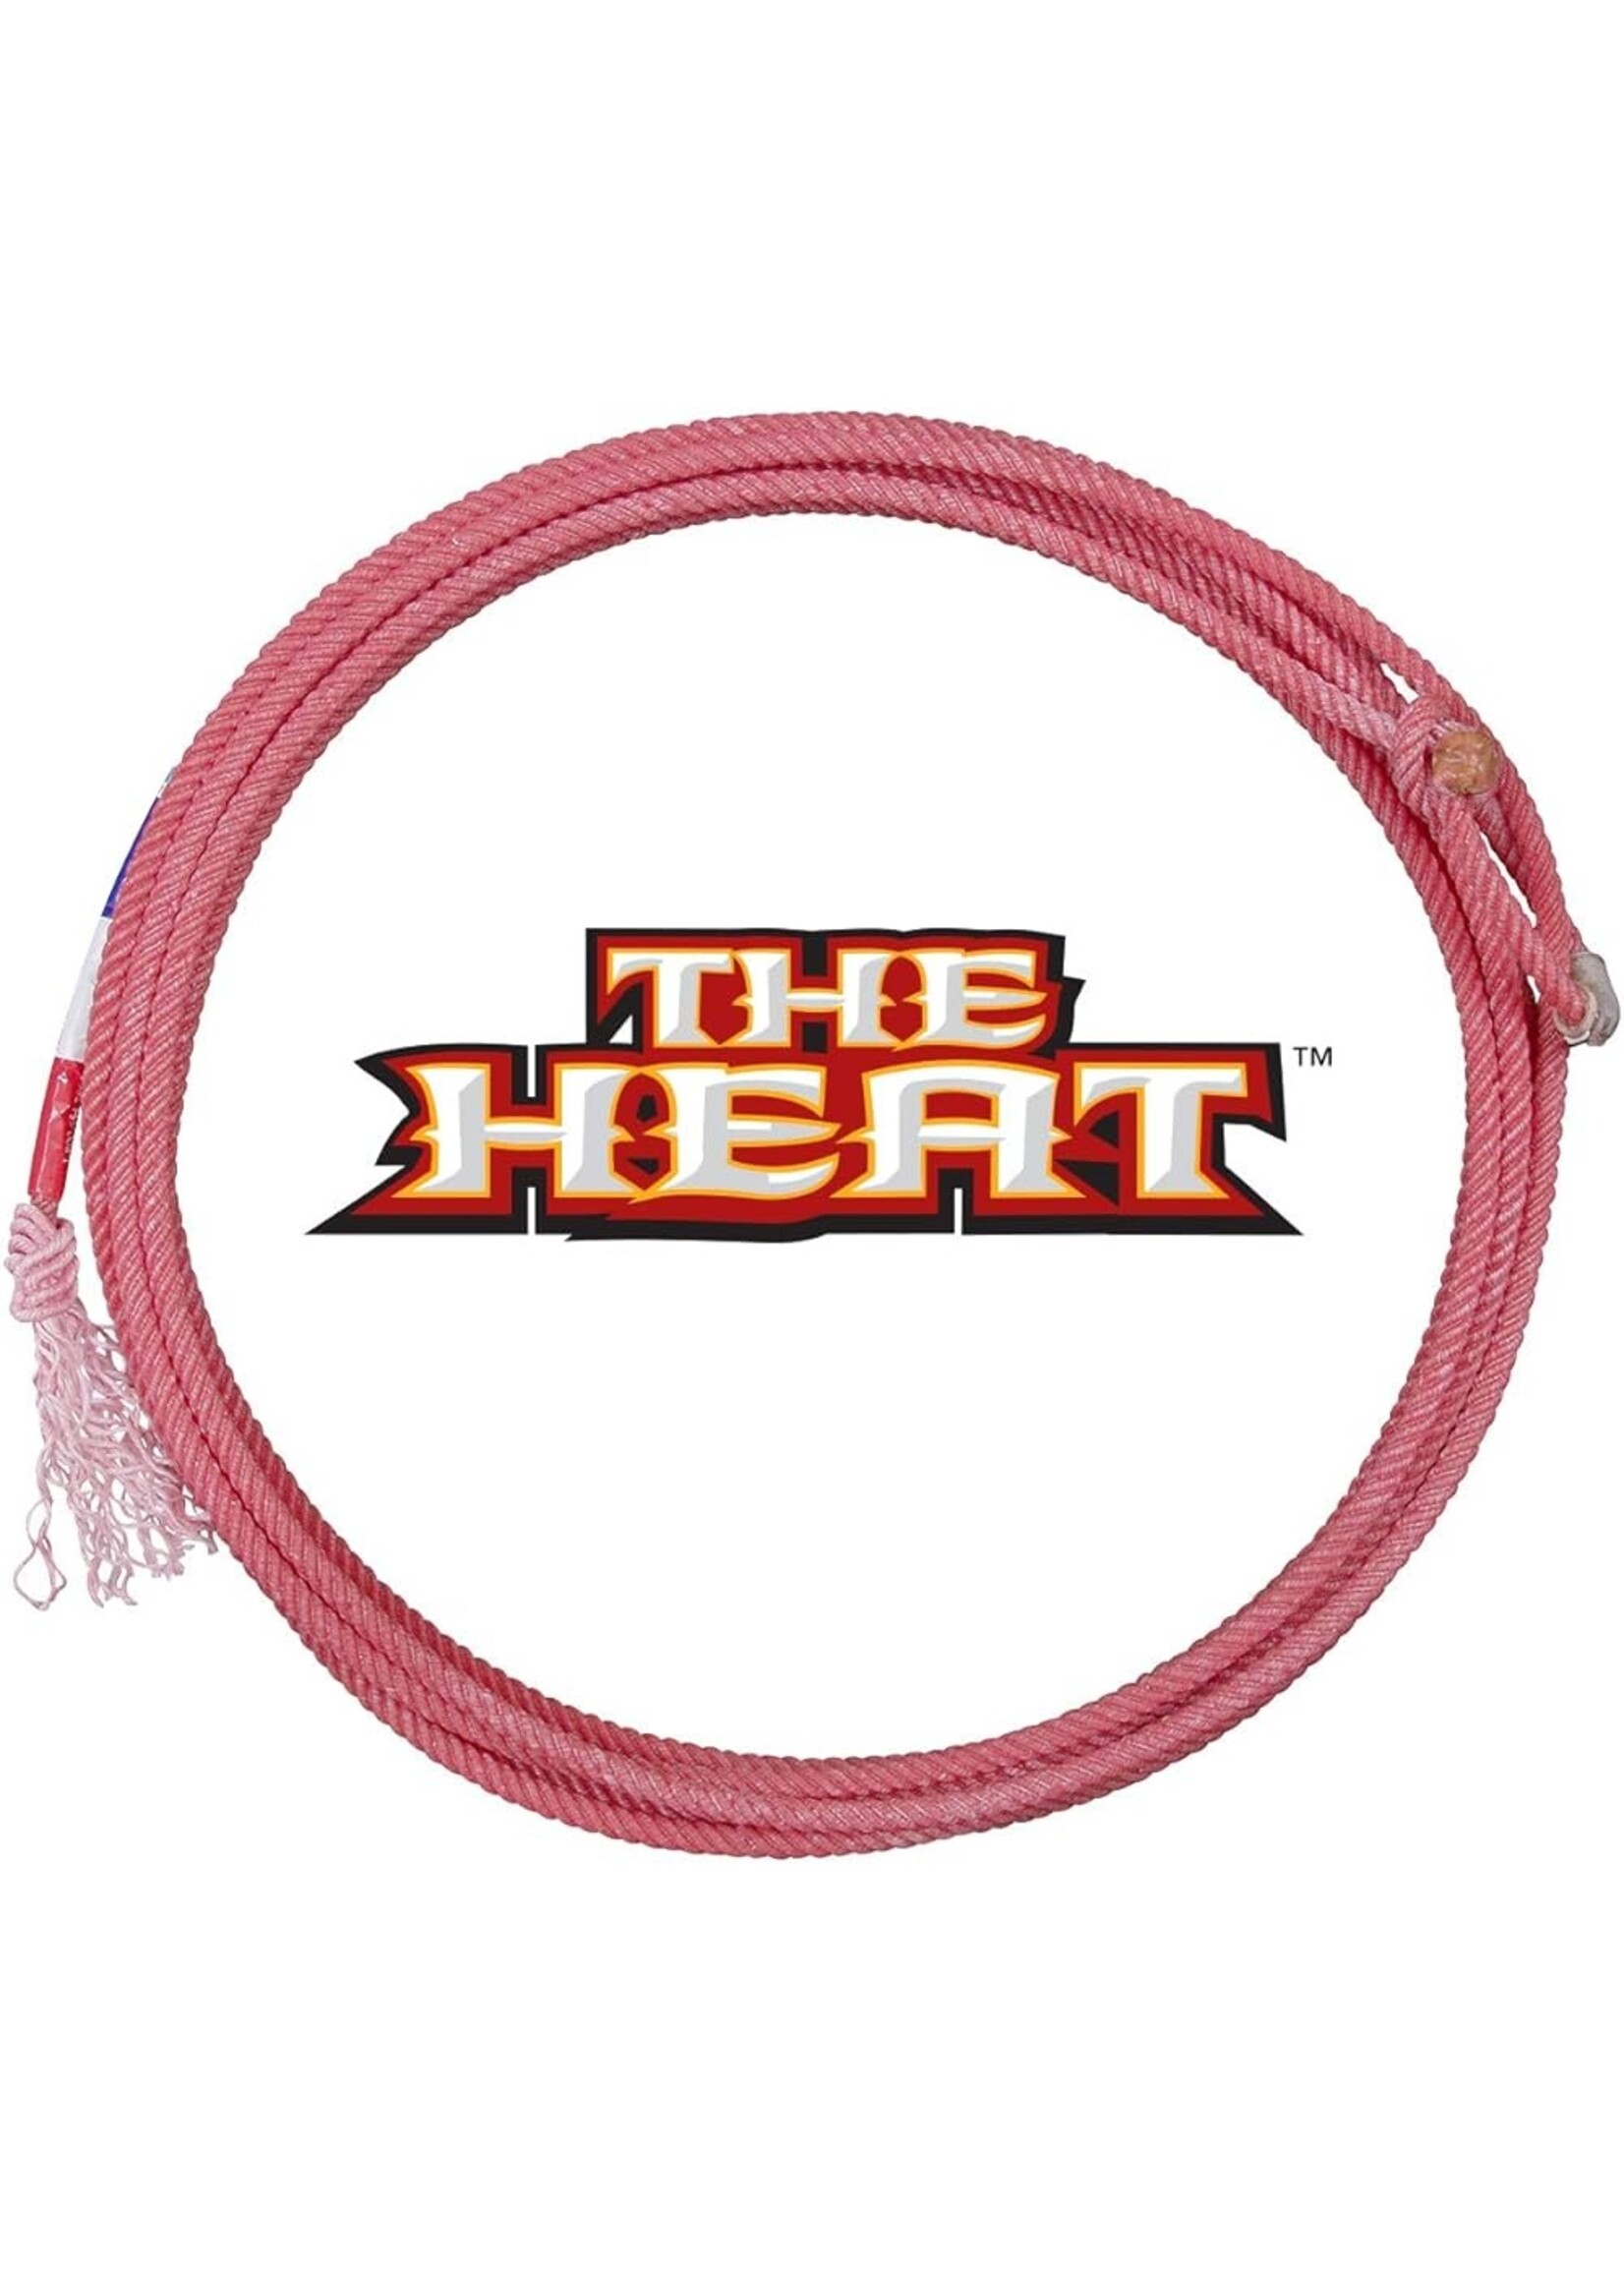 Heel Rope - The Heat